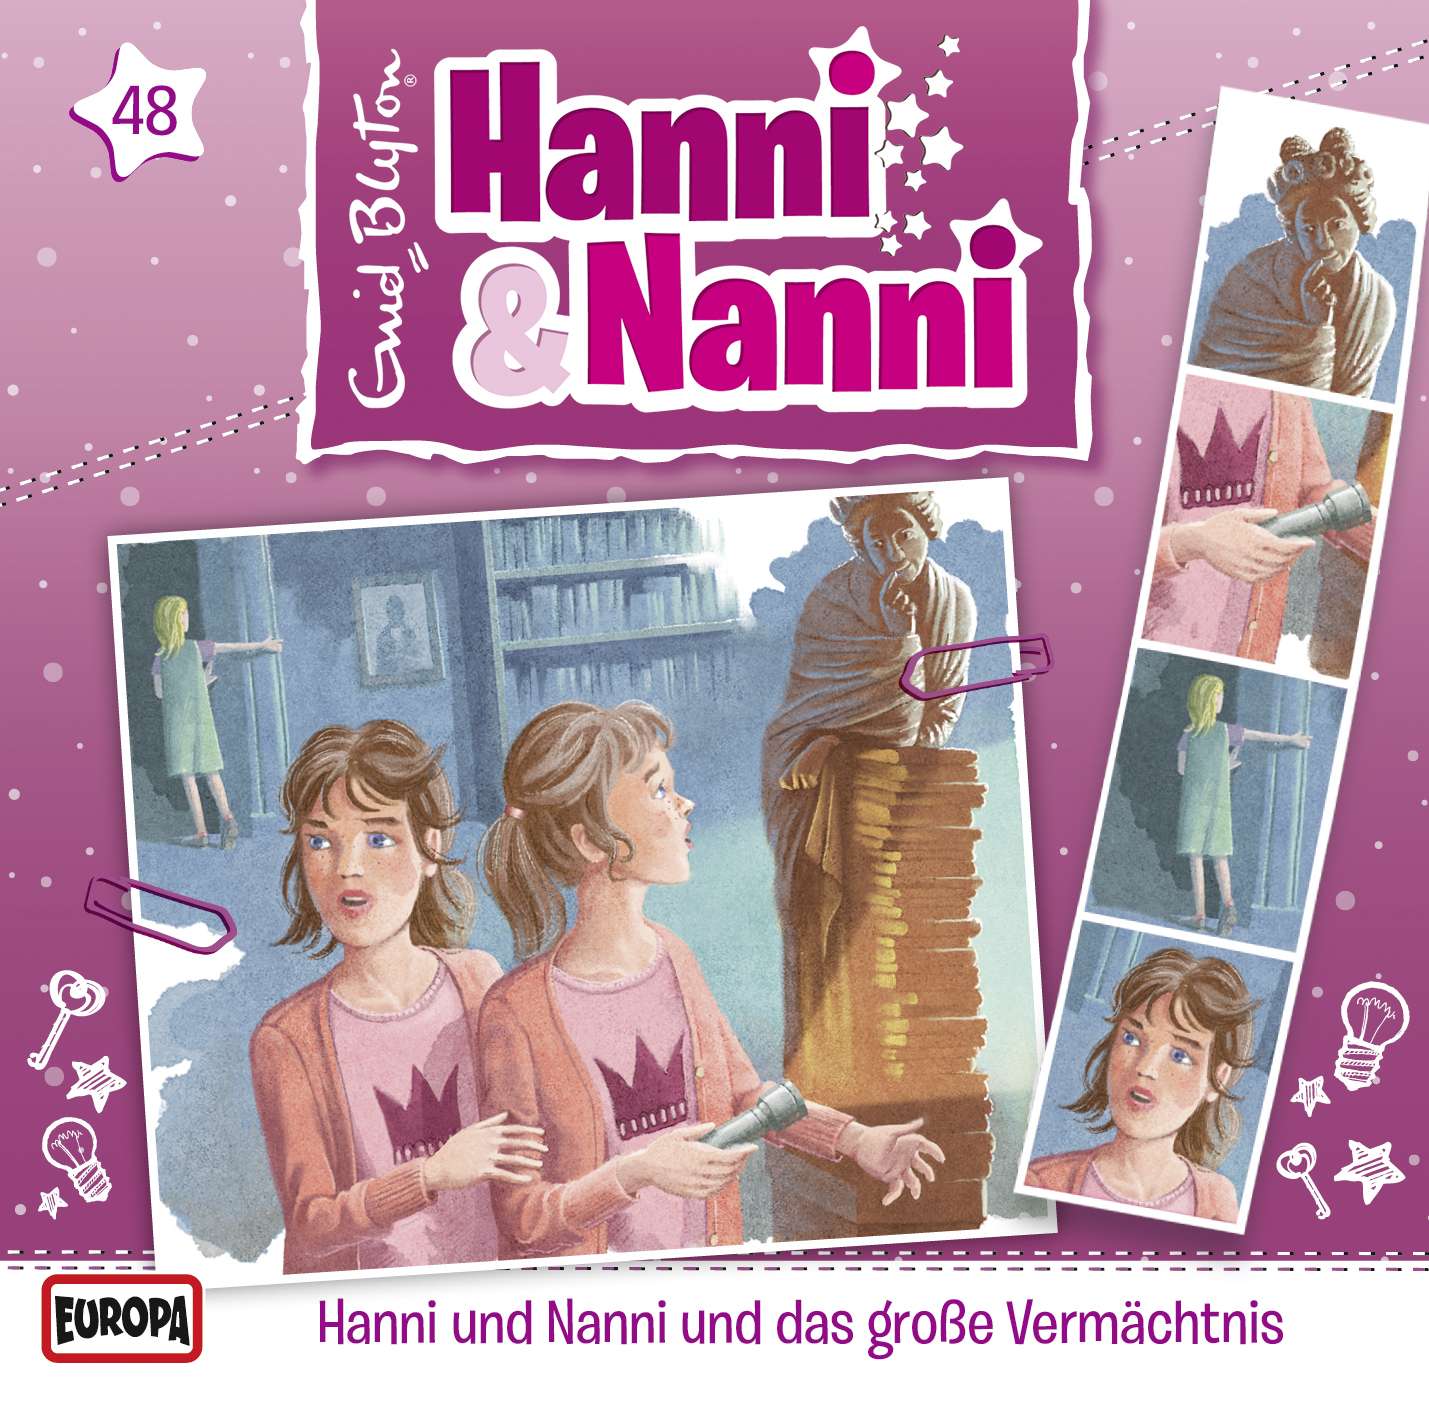 Hanni und Nanni: Hanni & Nanni und das große Vermächtnis